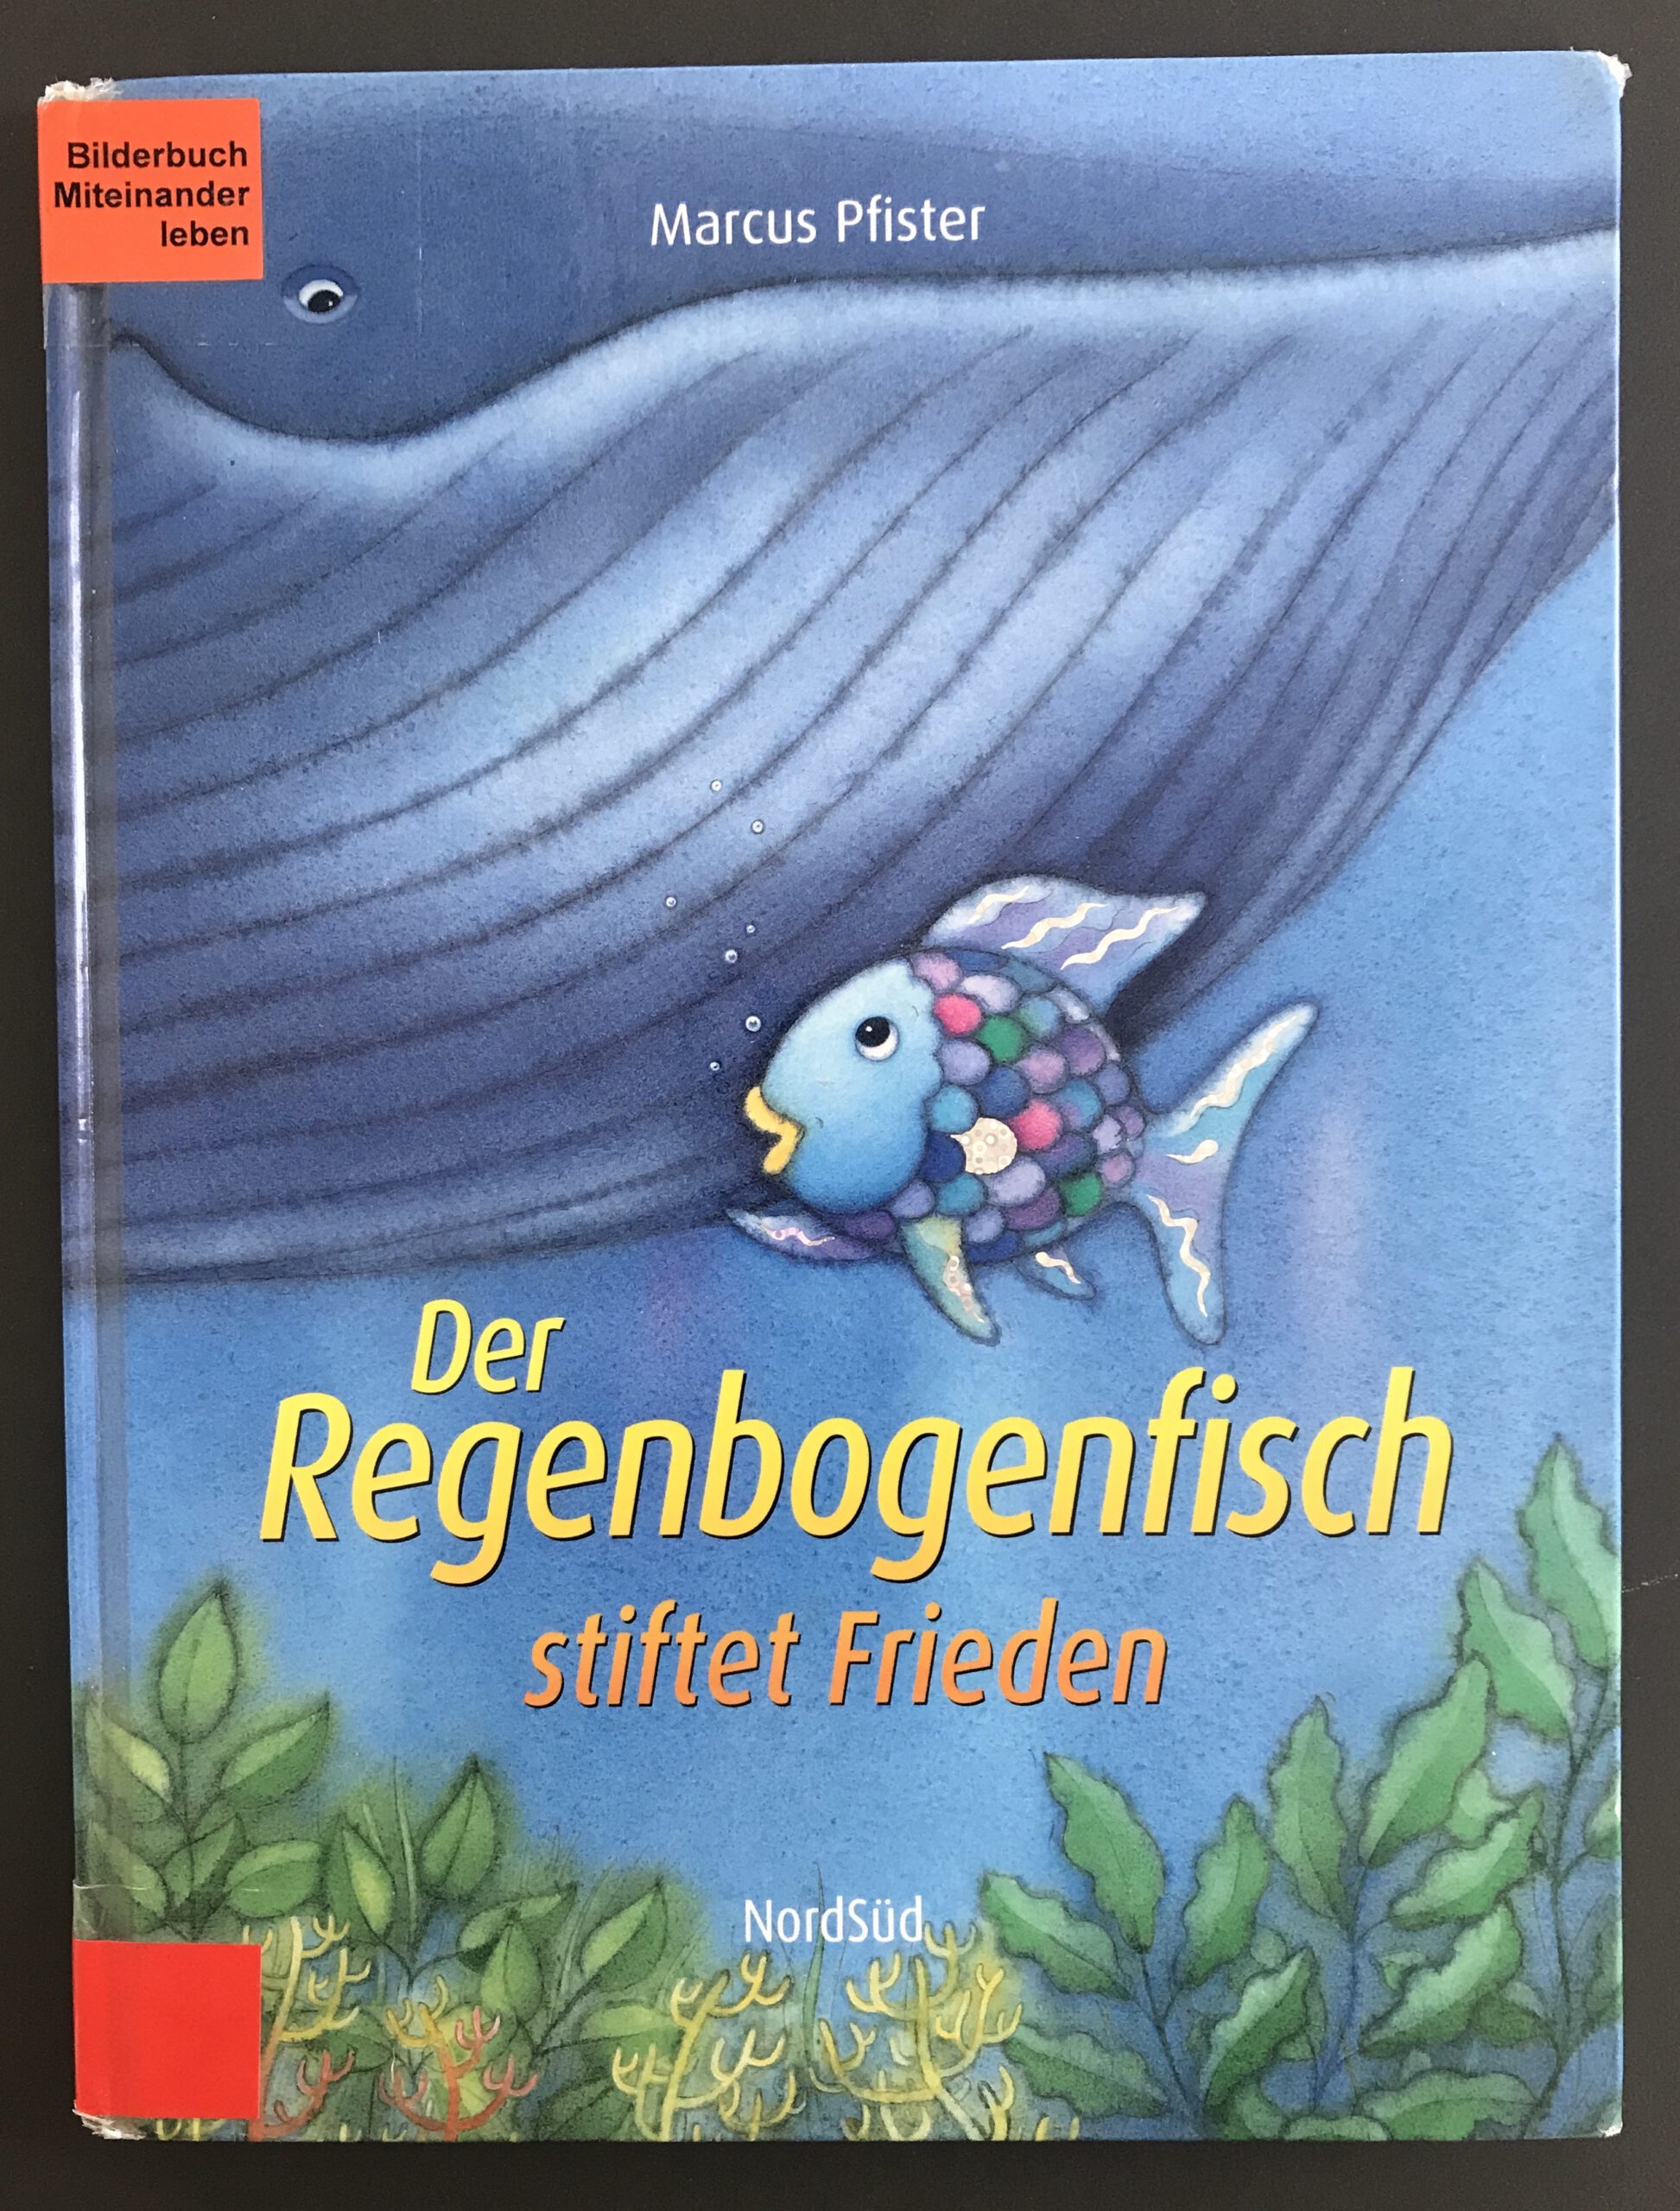 https://schule-bwhg.de/wp-content/uploads/2022/04/RegenbogenfischstiftetFrieden-scaled.jpg